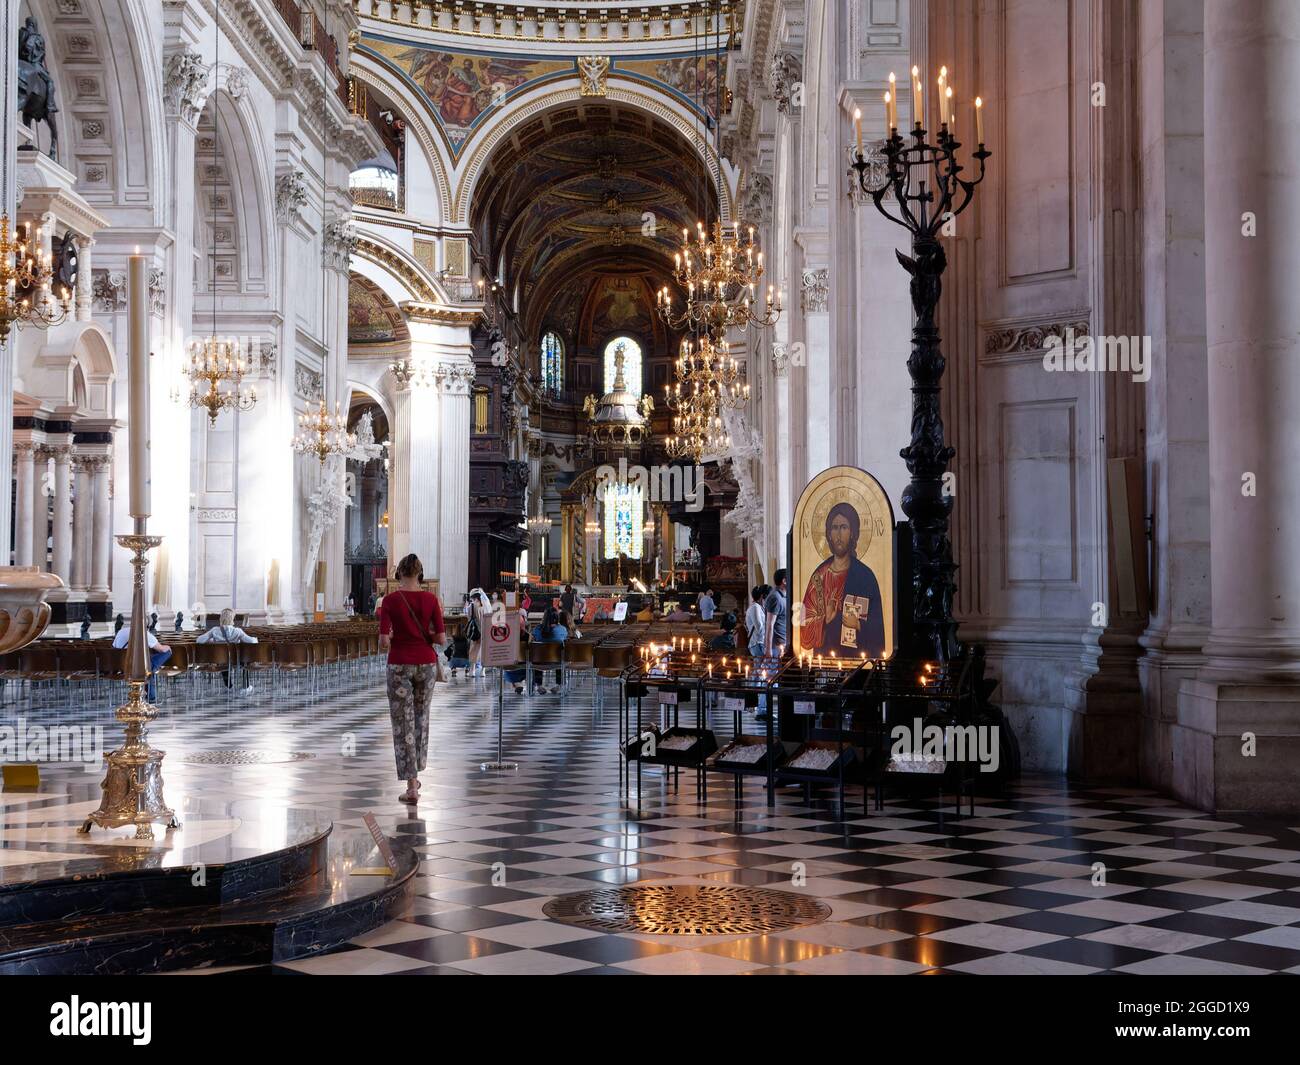 Londres, Grand Londres, Angleterre, août 24 2021 : intérieur de la cathédrale Saint-Paul. Banque D'Images